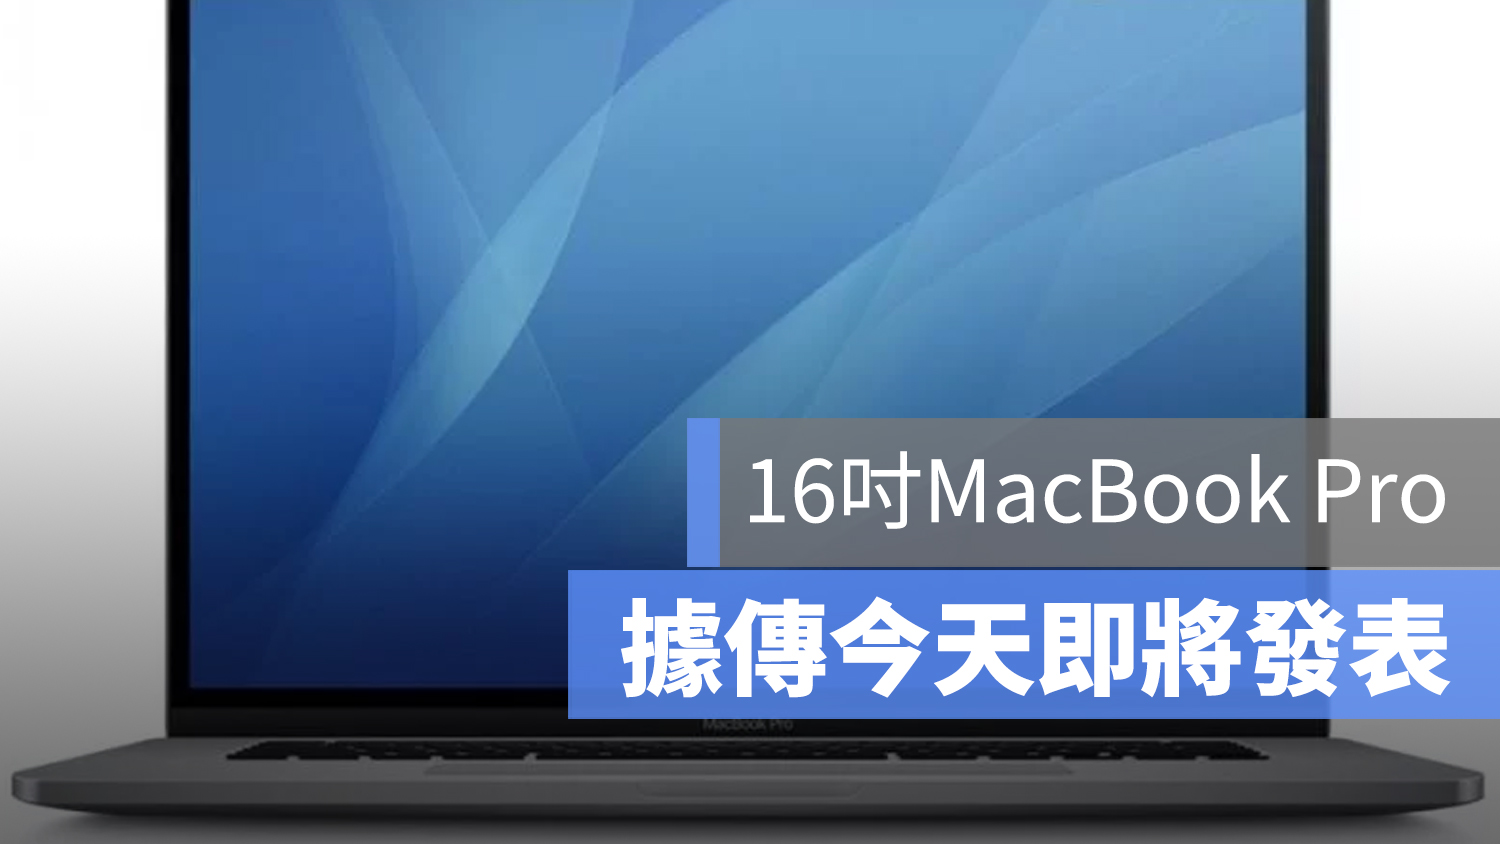 16 吋 MacBook Pro